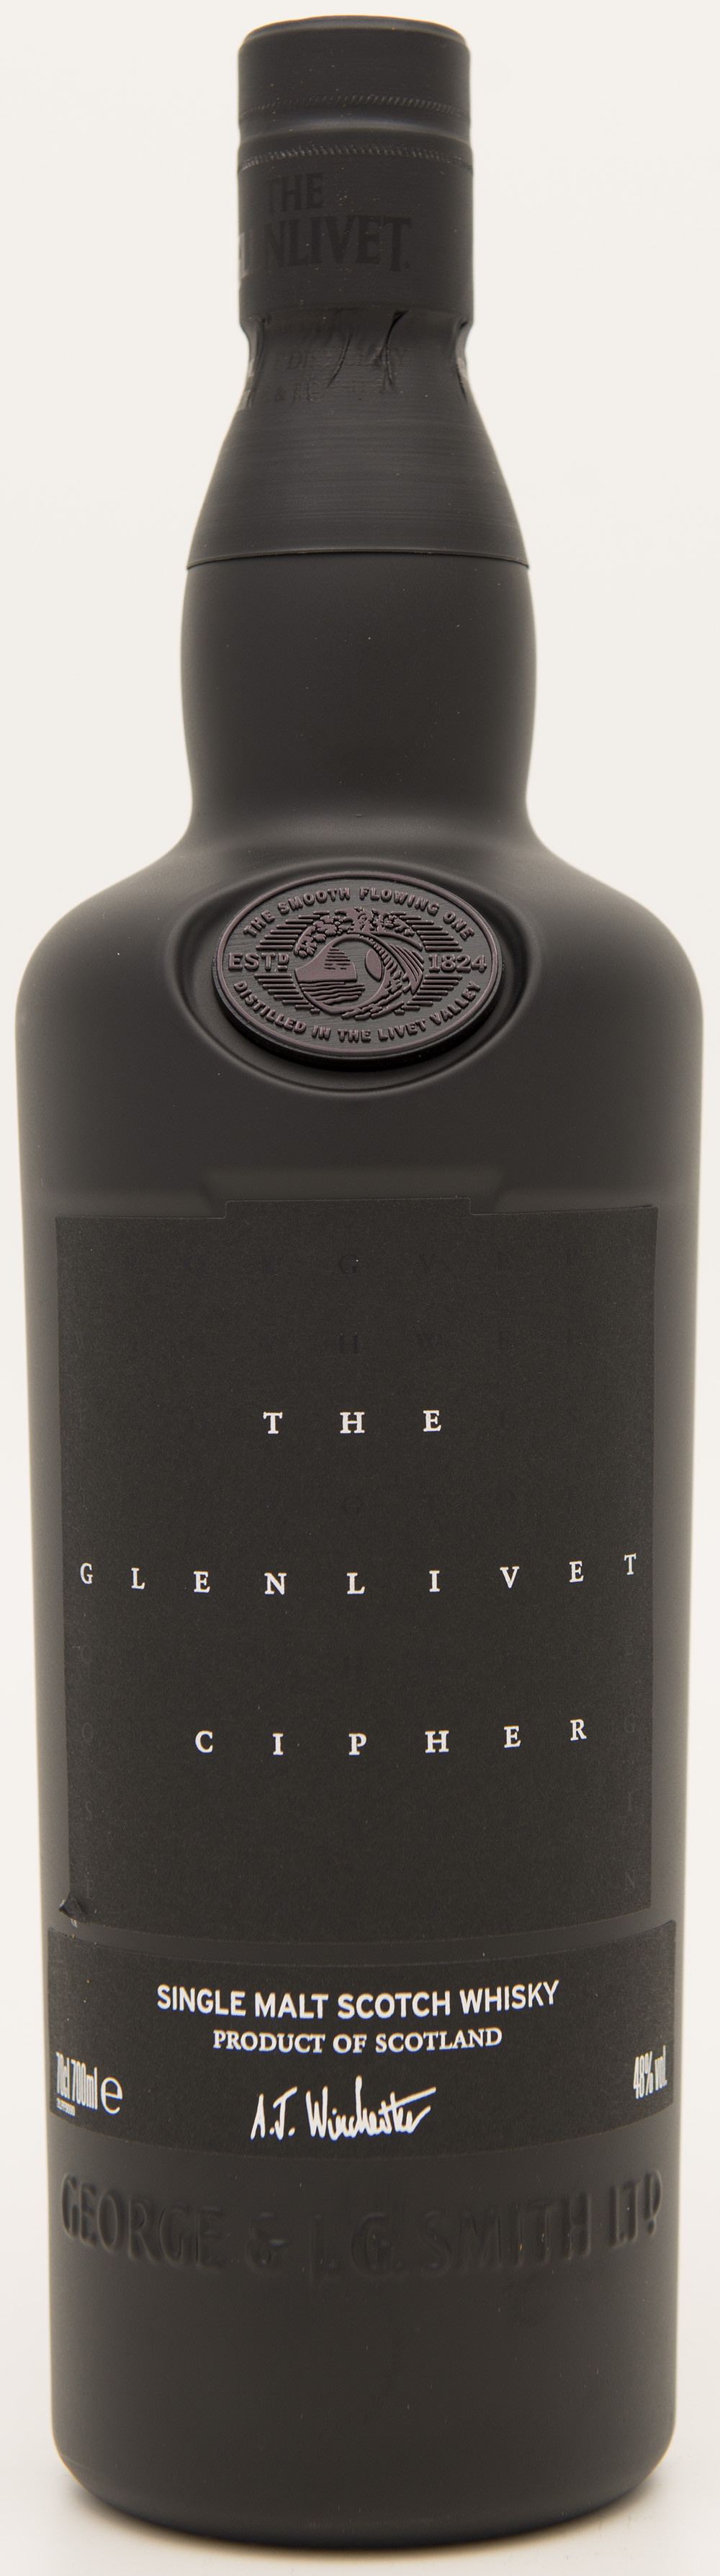 Billede: DSC_1128 - The Glenlivet Cipher - bottle front.jpg